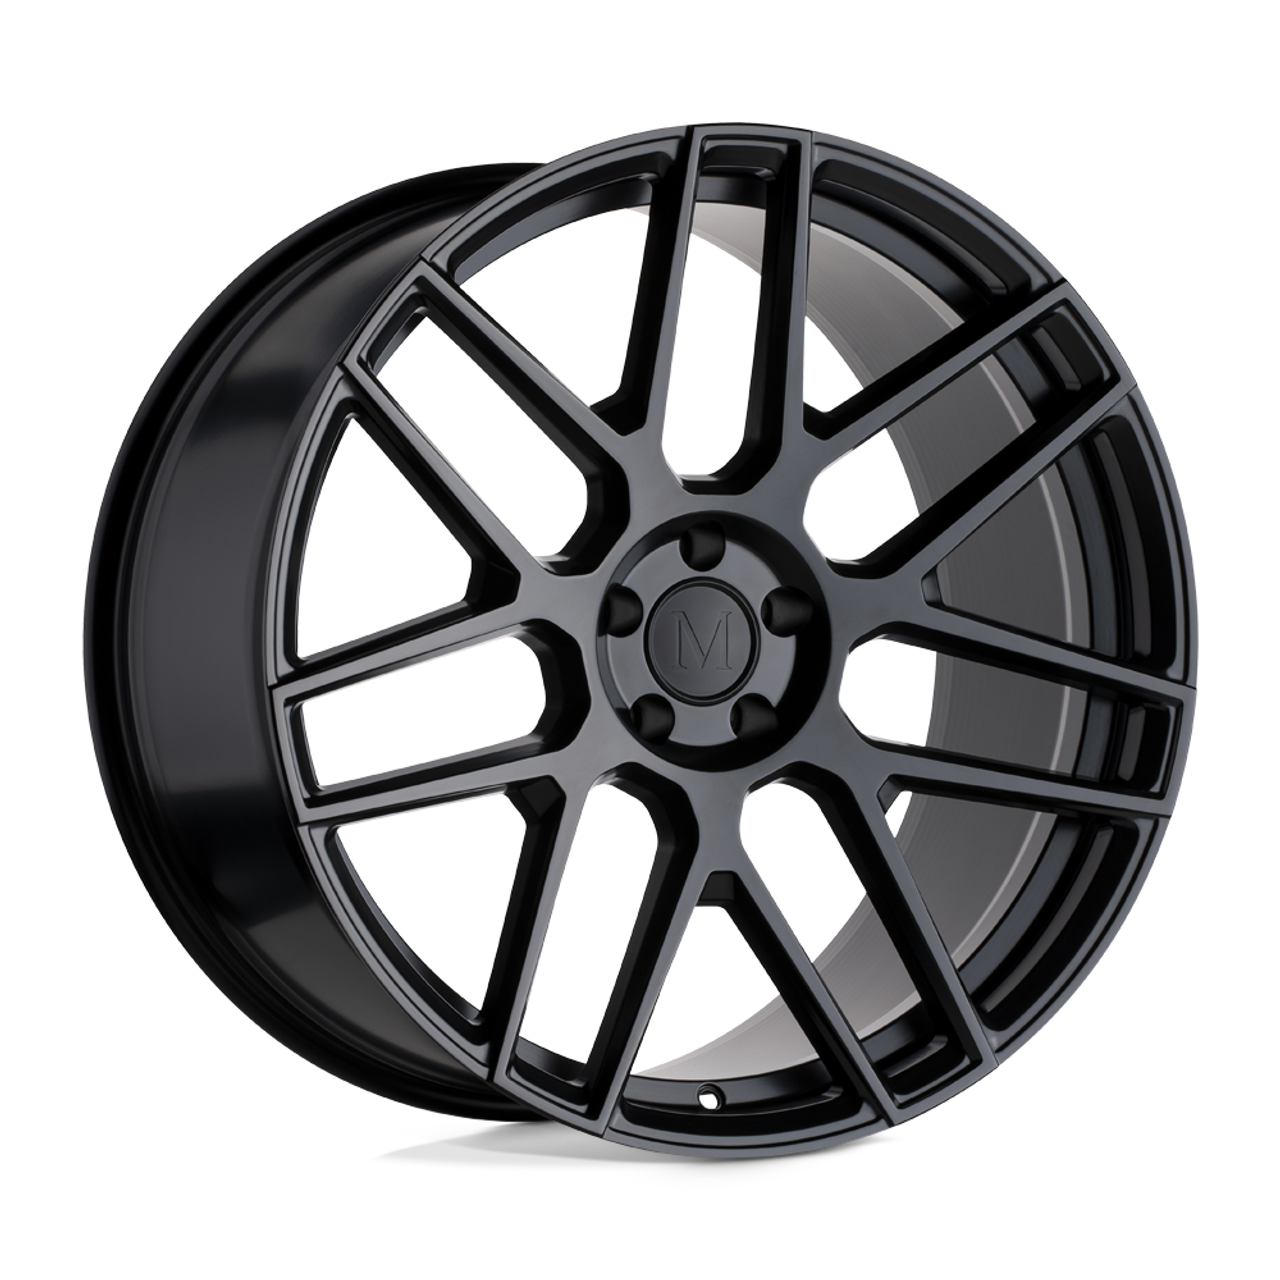 Mandrus Miglia 20x10 5x112 Semi Gloss Black Rf Wheel 20" 45mm Rim